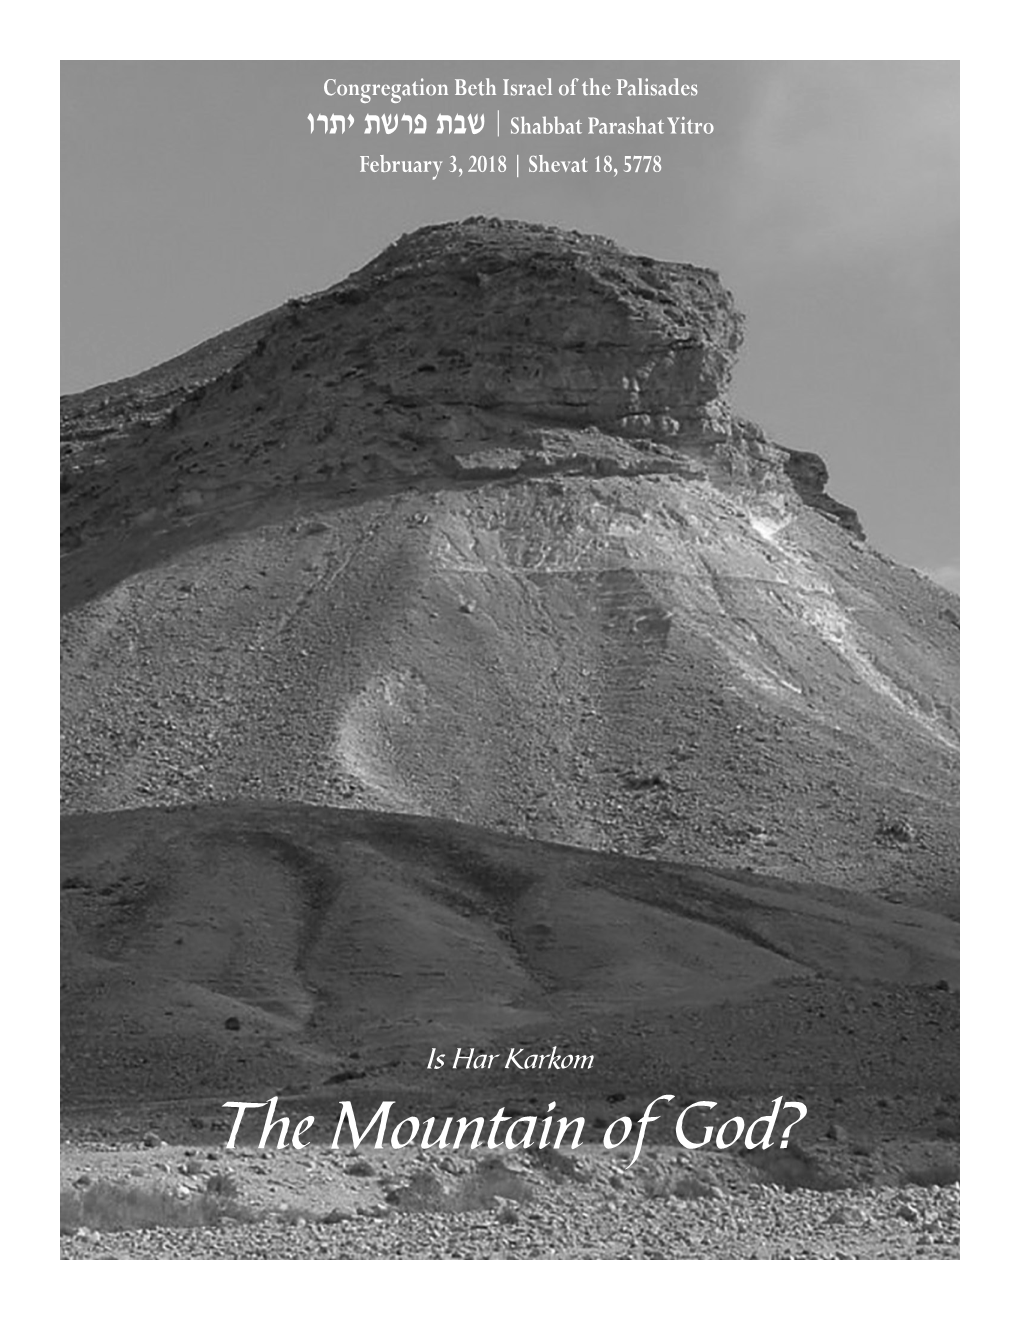 The Mountain of God? TORAH STUDY